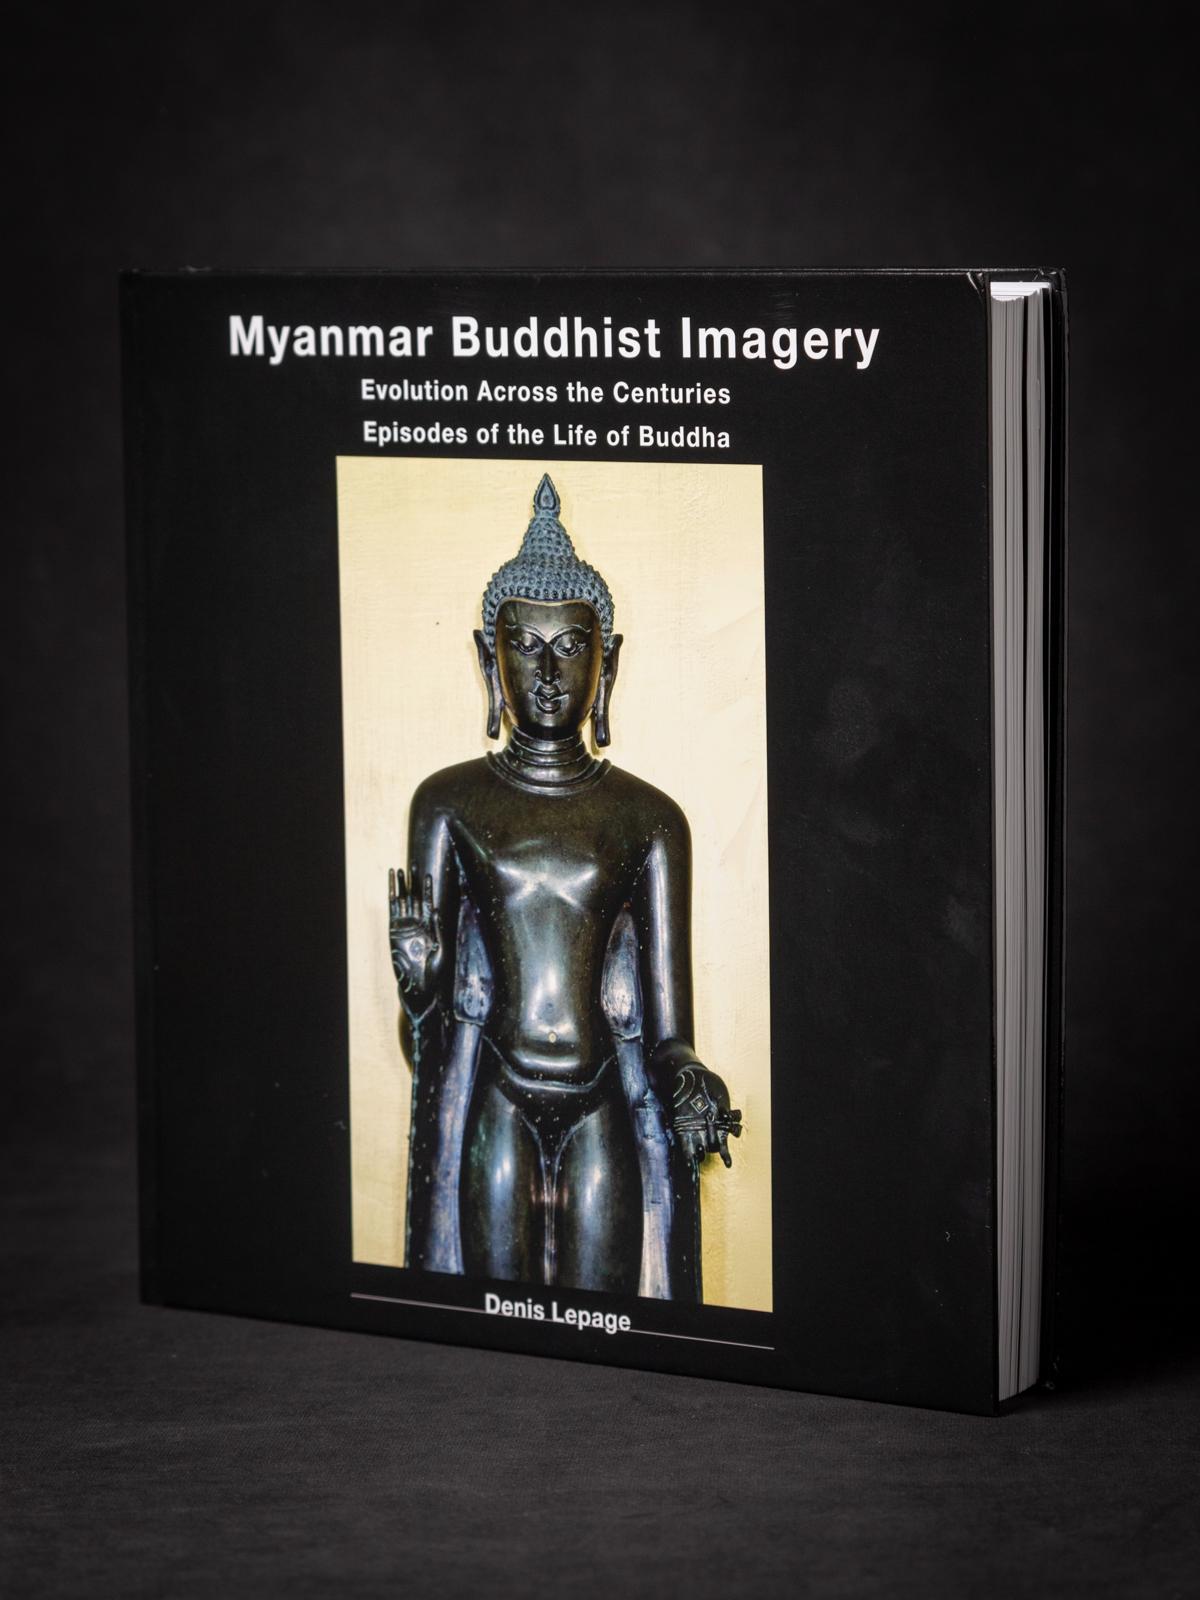 MATERIAL : Livre
3 cm de haut
26 cm de large et 26 cm de haut
Un excellent livre sur les arts bouddhistes du Myanmar, avec de nombreuses images de haute qualité et des descriptions correctes.
Avec de nombreuses images uniques et magnifiques de